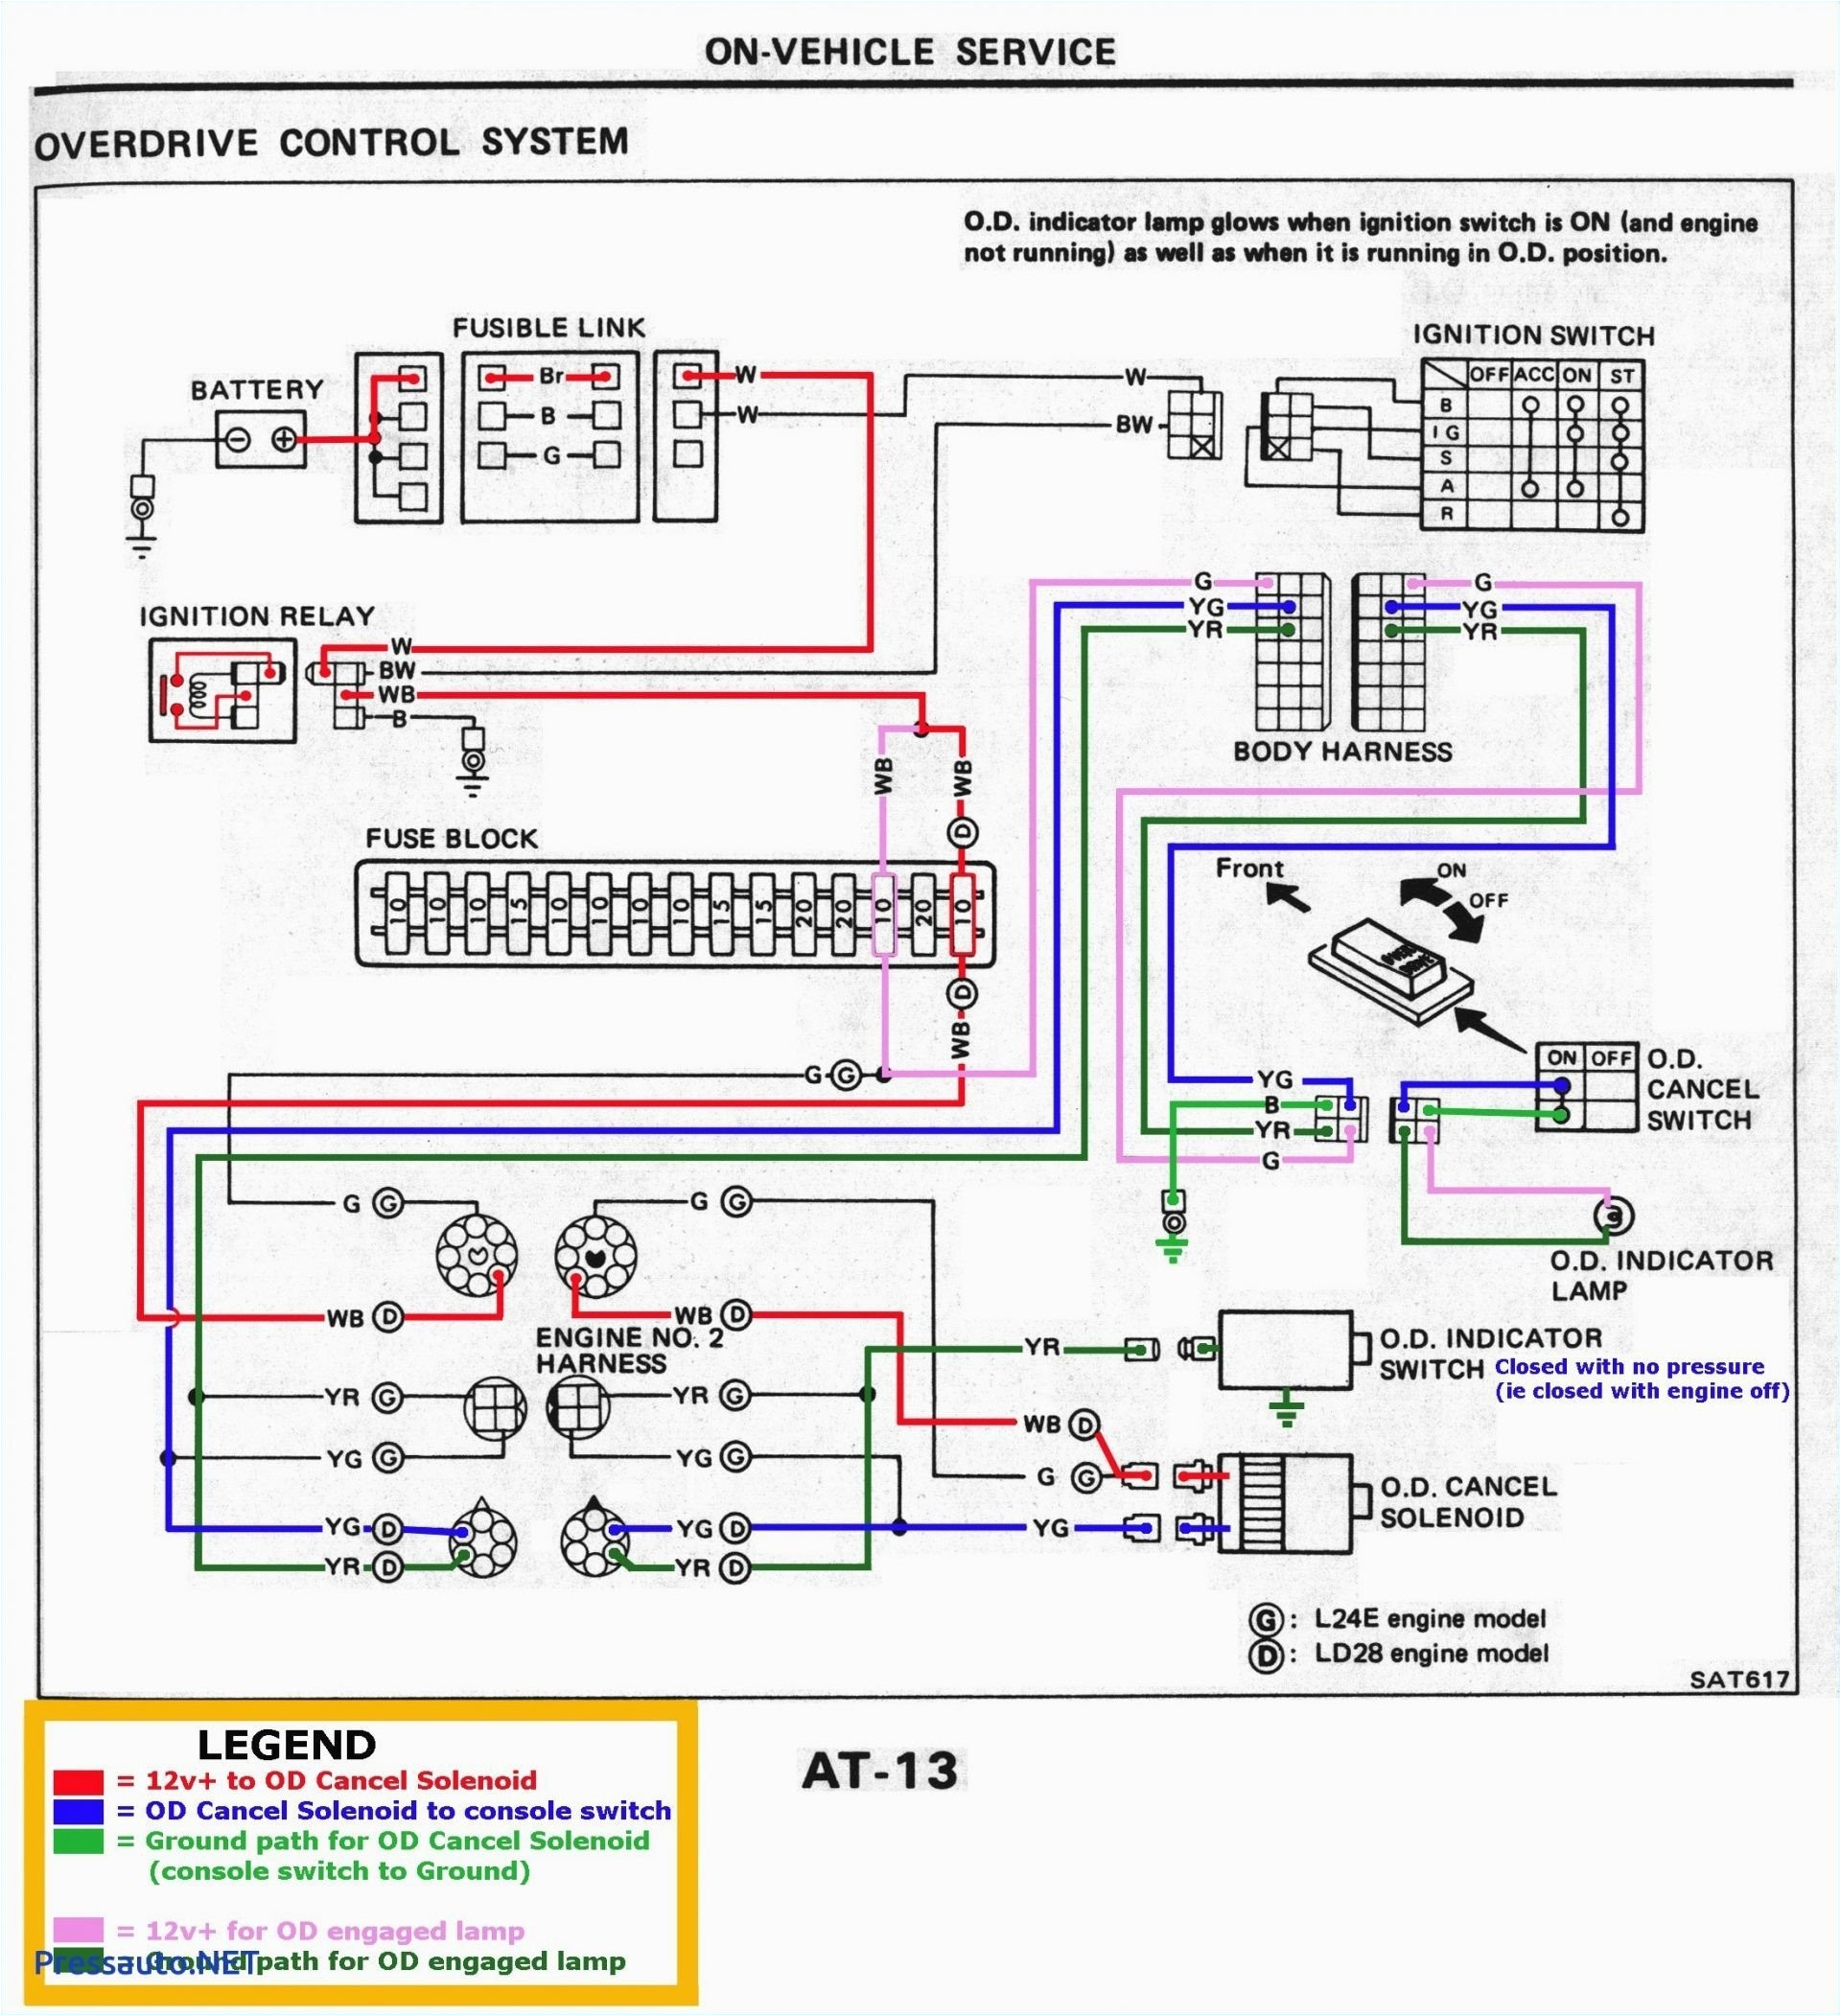 rv holding tank wiring diagram wiring diagram for rv holding tank fresh rv trailer wiring diagram inspirational wiring diagram fresh wiring 7b jpg